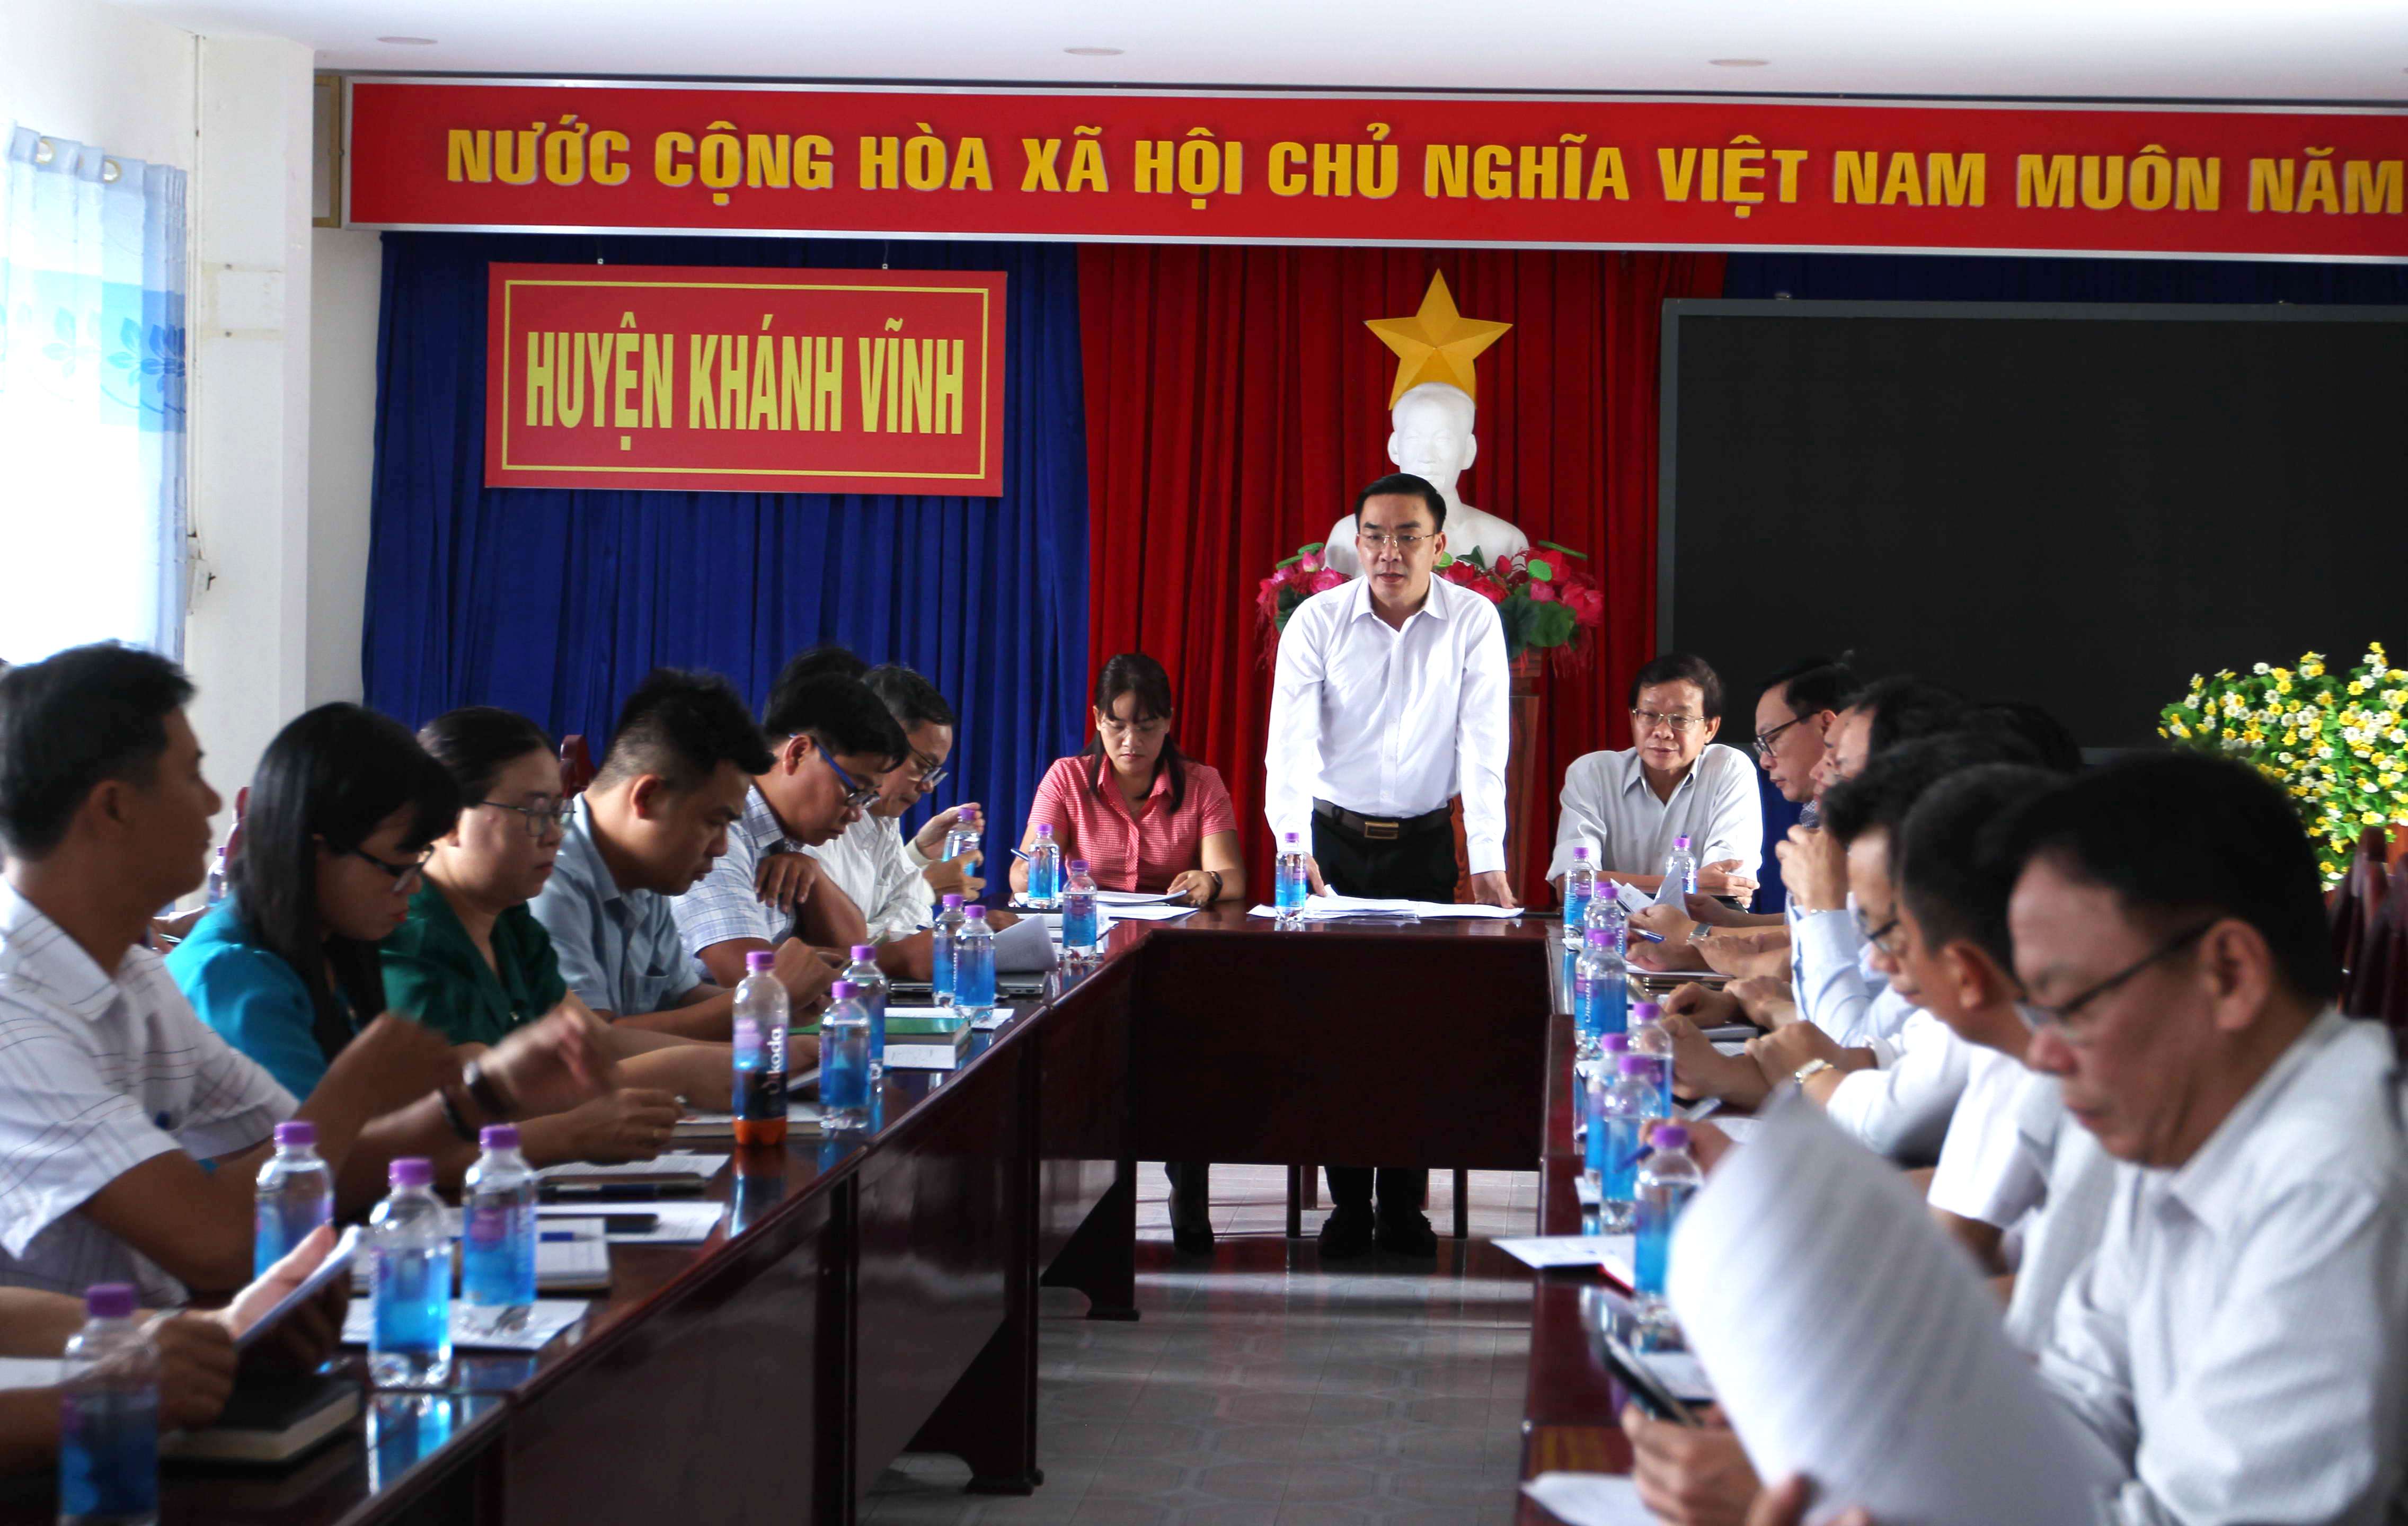 Đoàn công tác Bộ Y tế: giám sát công tác phòng, chống sốt rét huyện Khánh Vĩnh